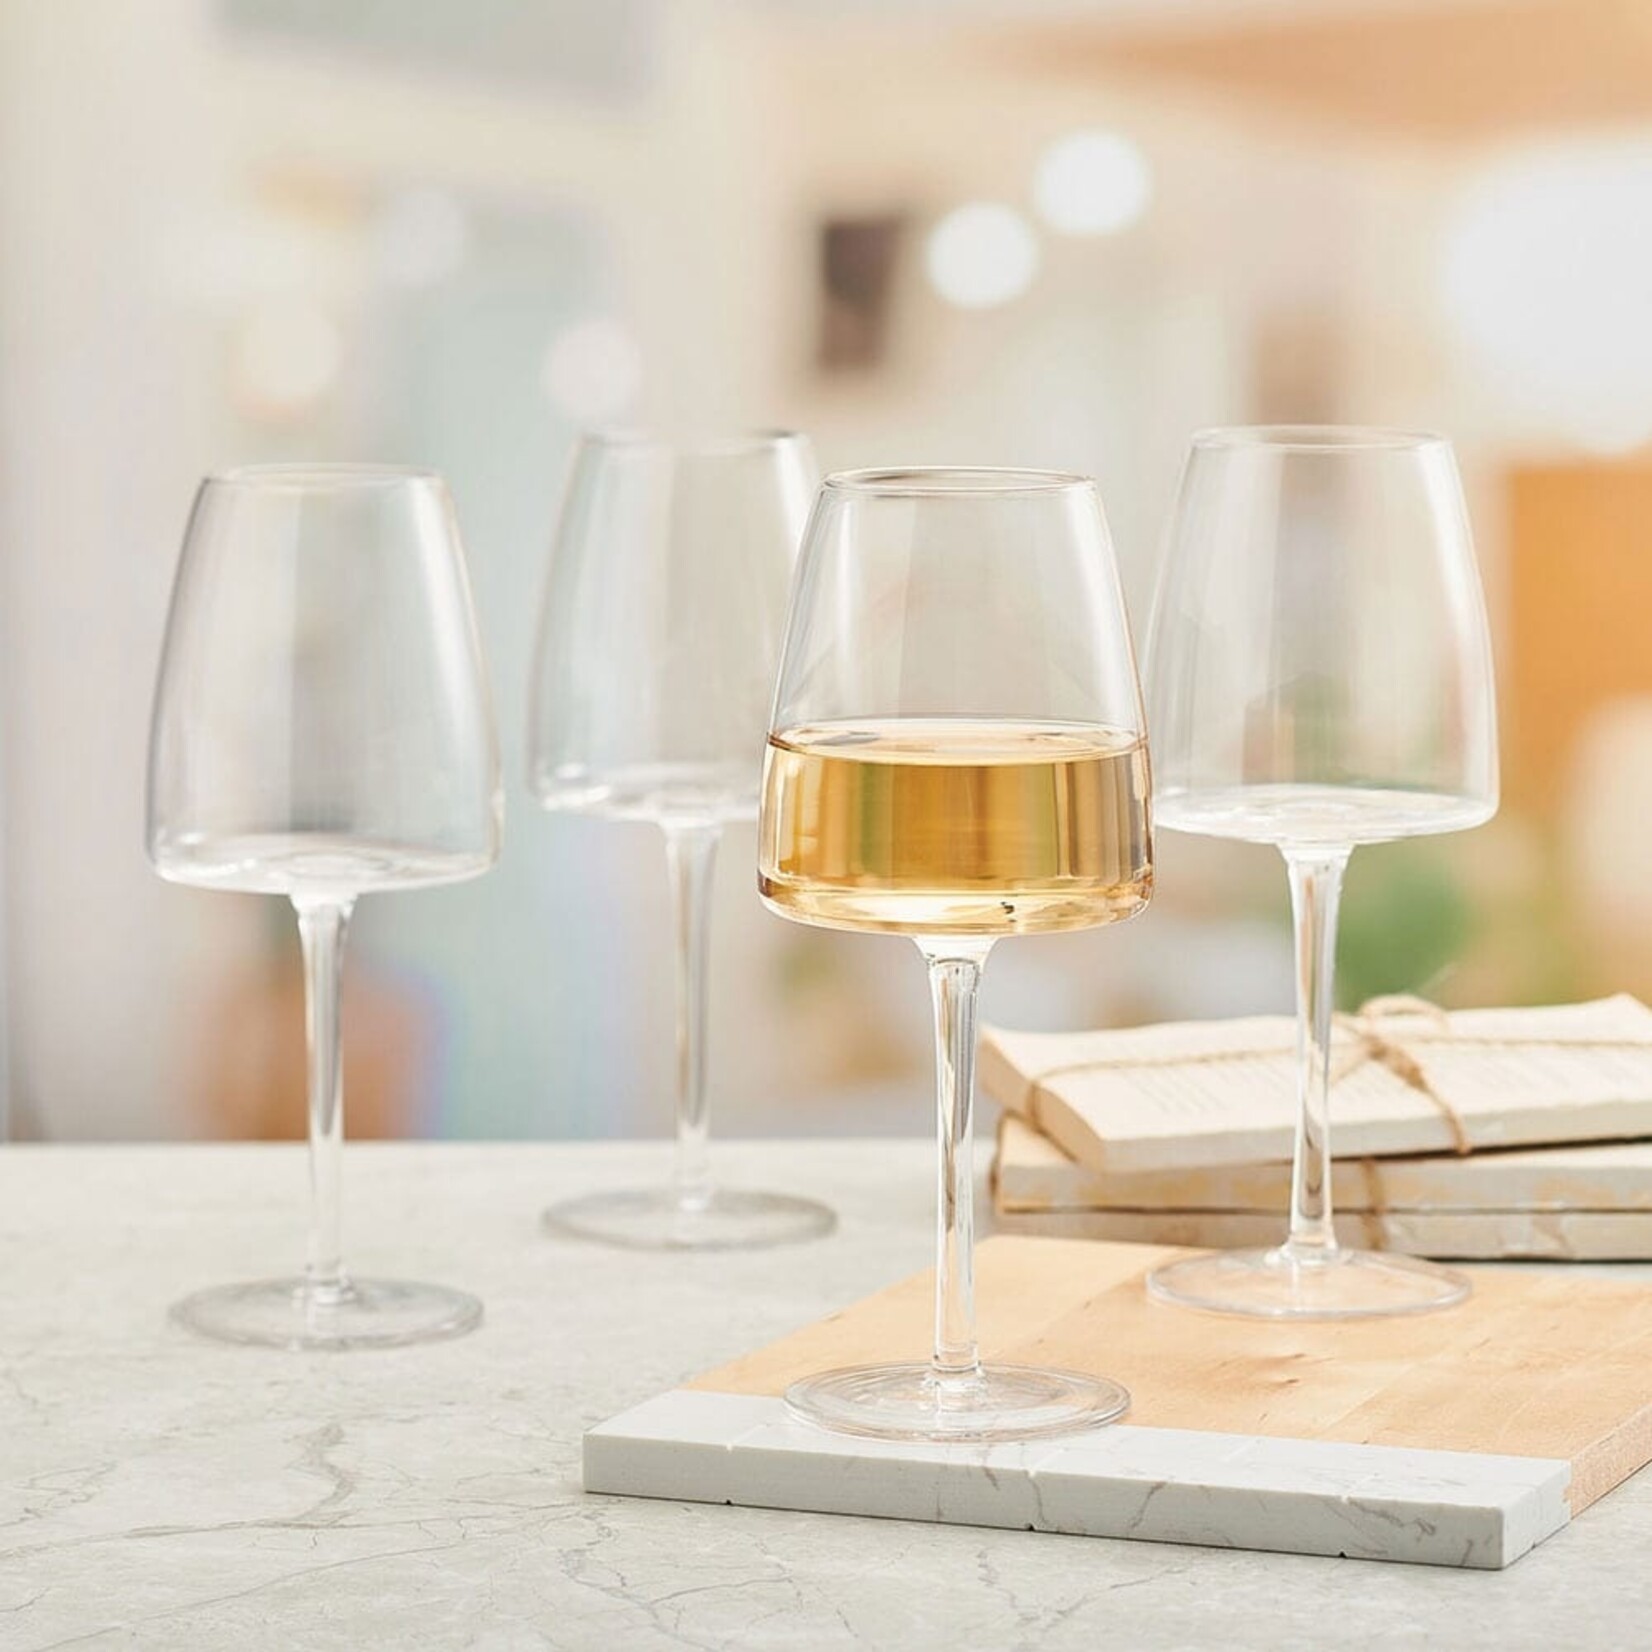 Cora White Wine Glasses - Set of 4